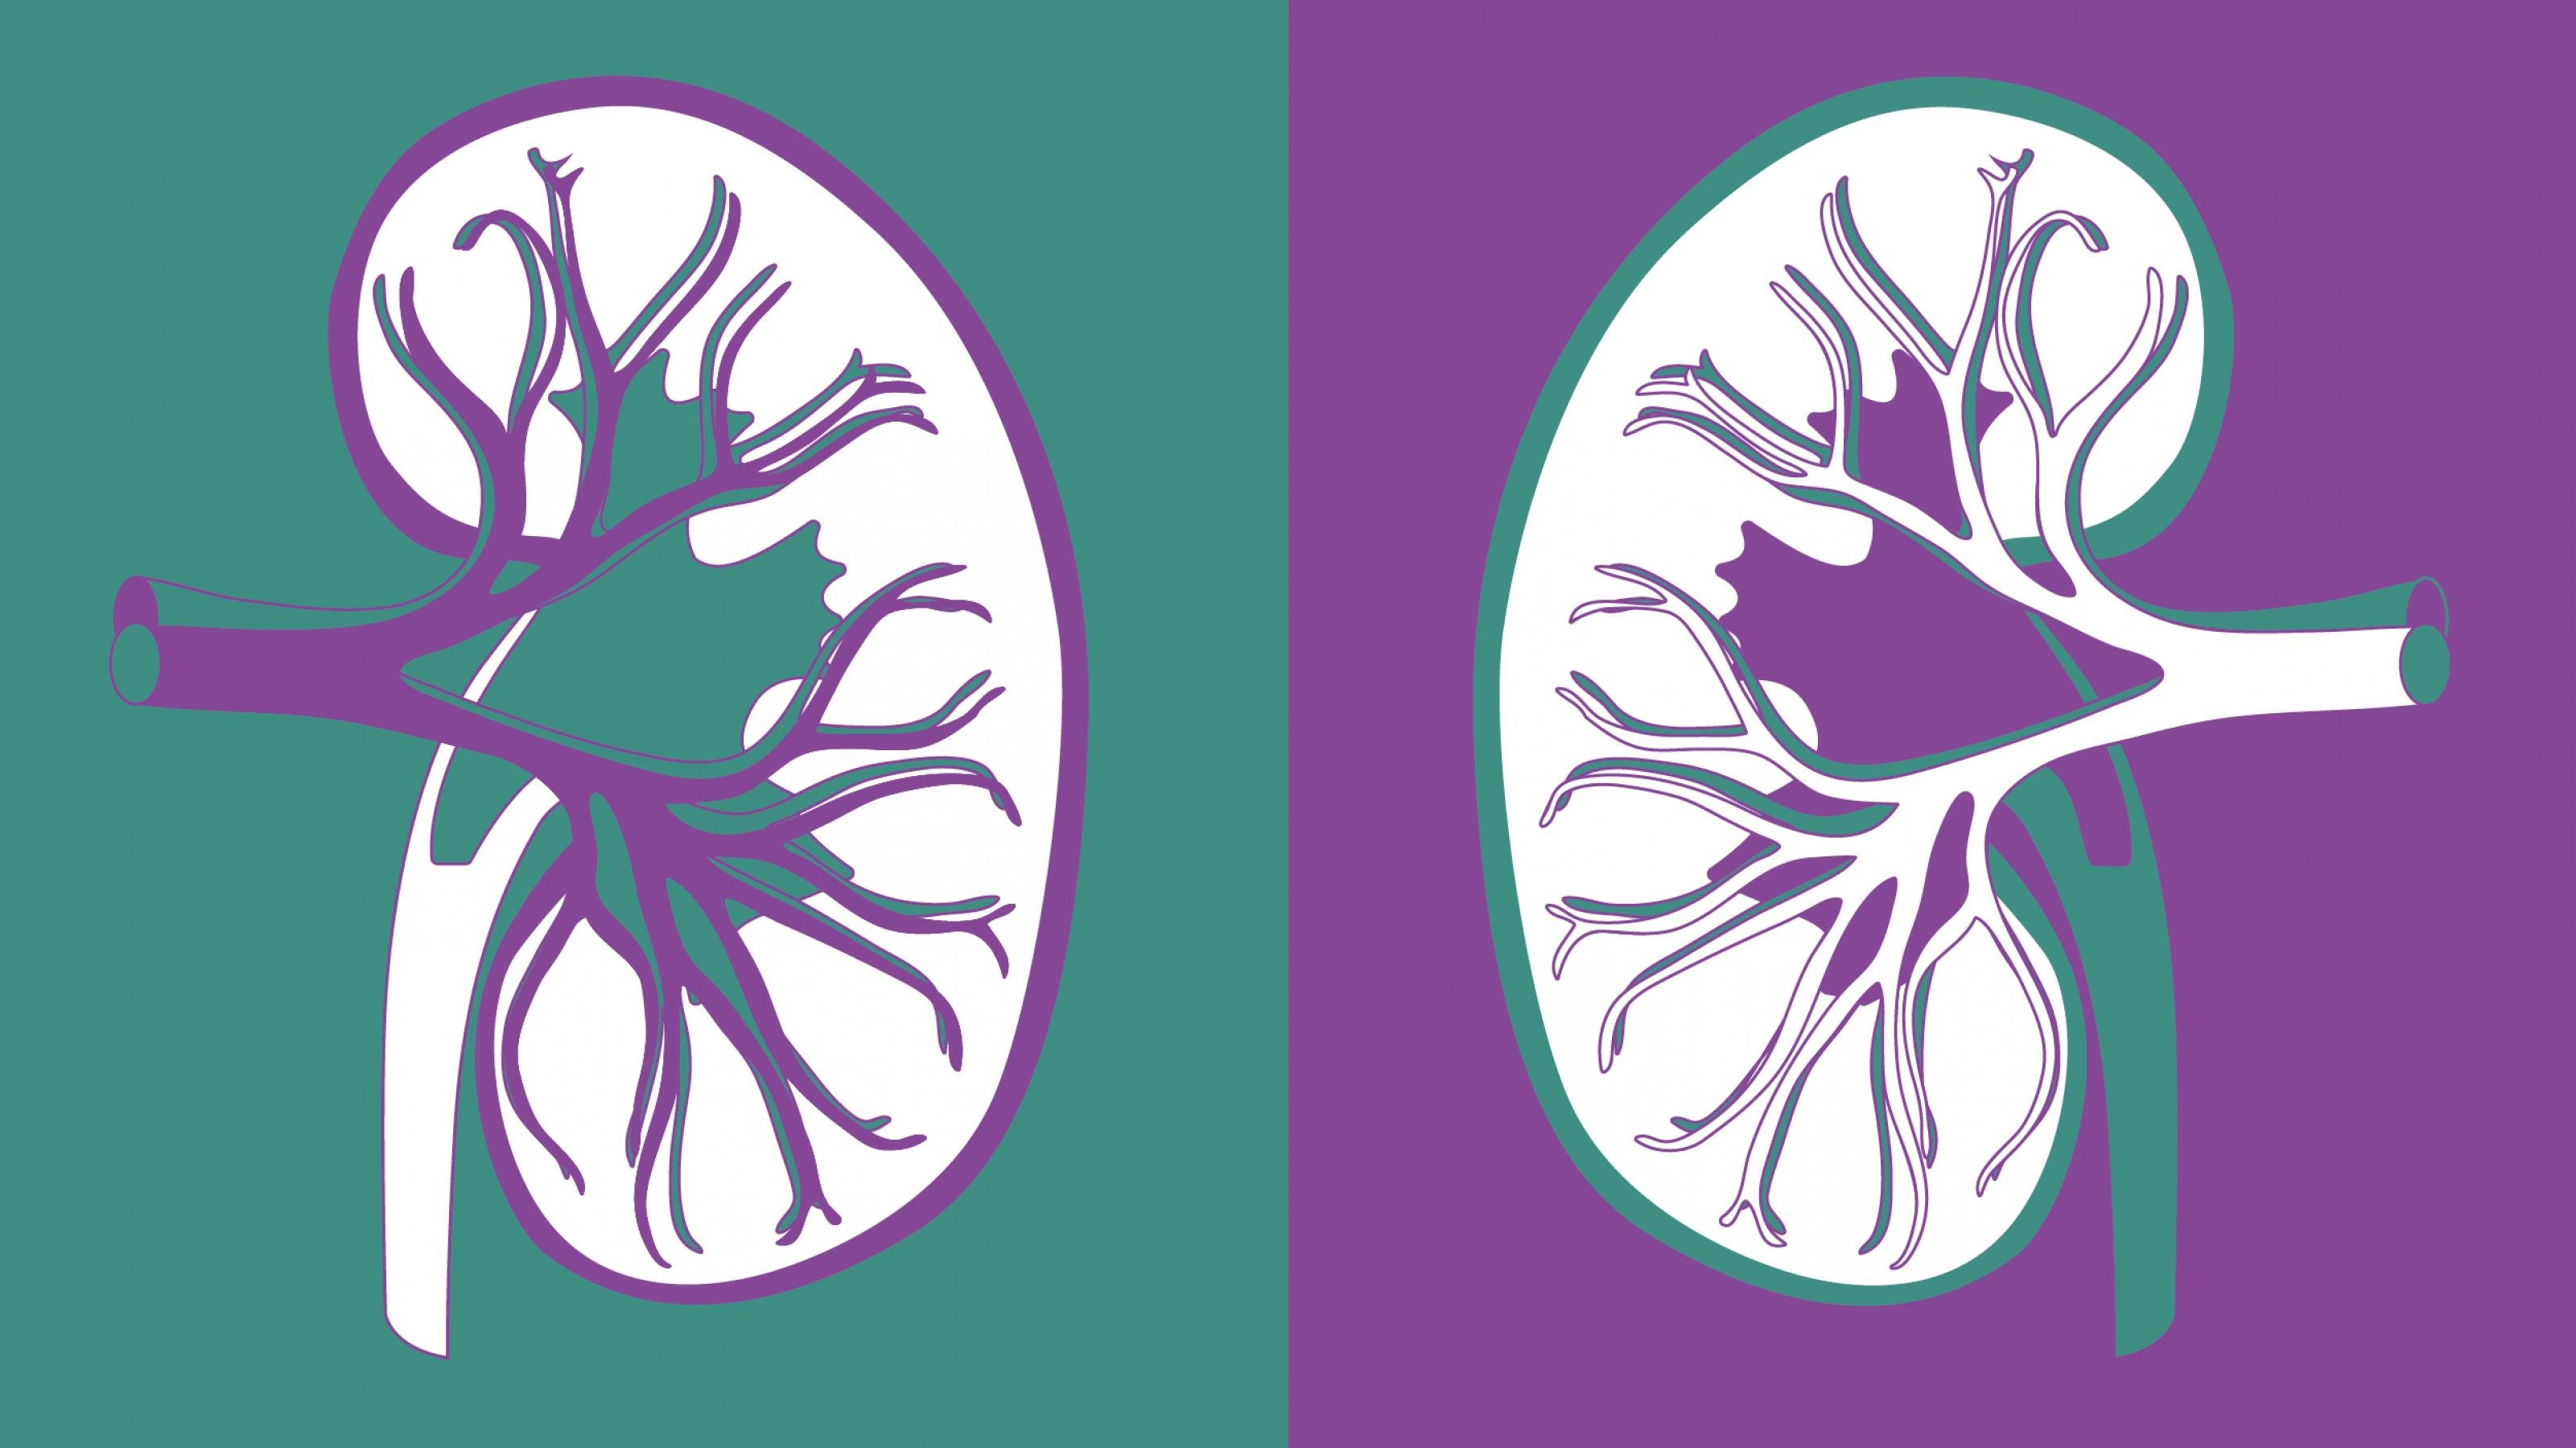 Das Bild ist in eine linke und eine rechte Hälfte geteilt. Links ist eine Zeichnung einer menschlichen Niere in violetten Linien vor einem grünen Hintergrund zu sehen. Rechts ist die gleiche Zeichnung spiegelverkehrt in violetten Linien vor einem grünen Hintergrund zu sehen.